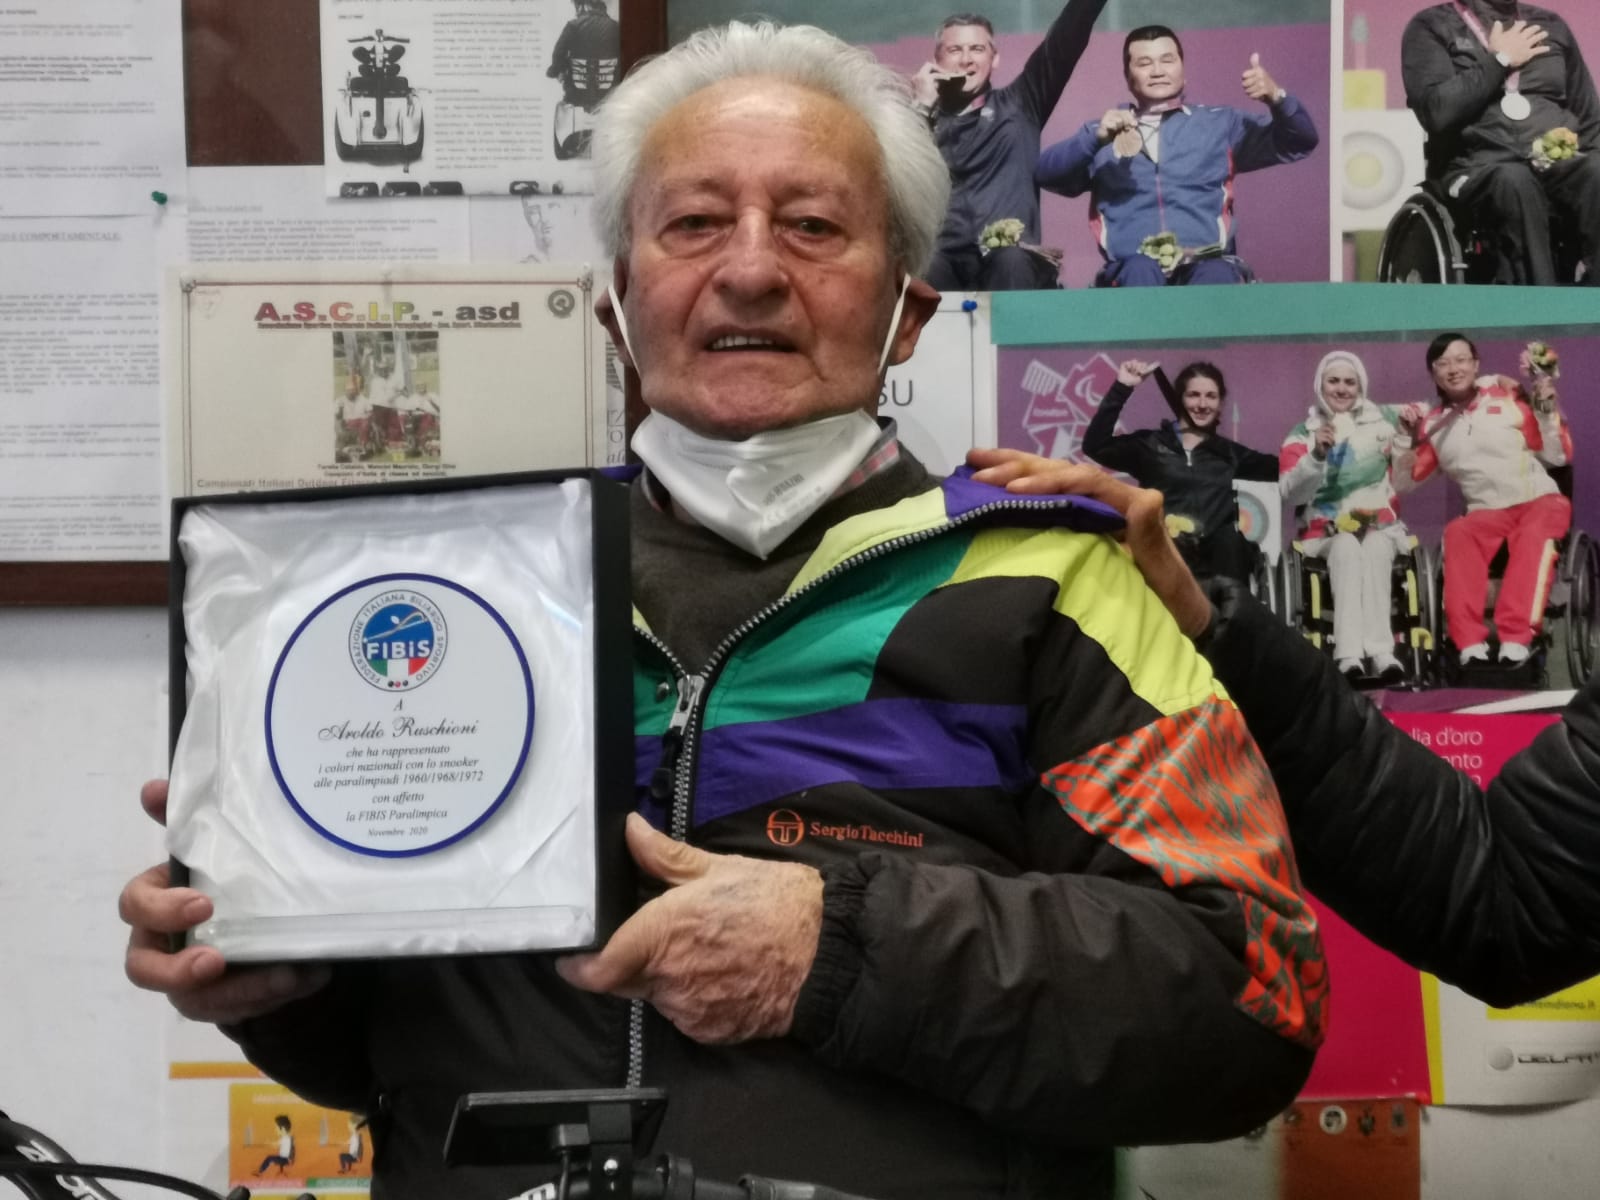 Biliardo Paralimpico: Aroldo Ruschioni premiato dalla Federazione